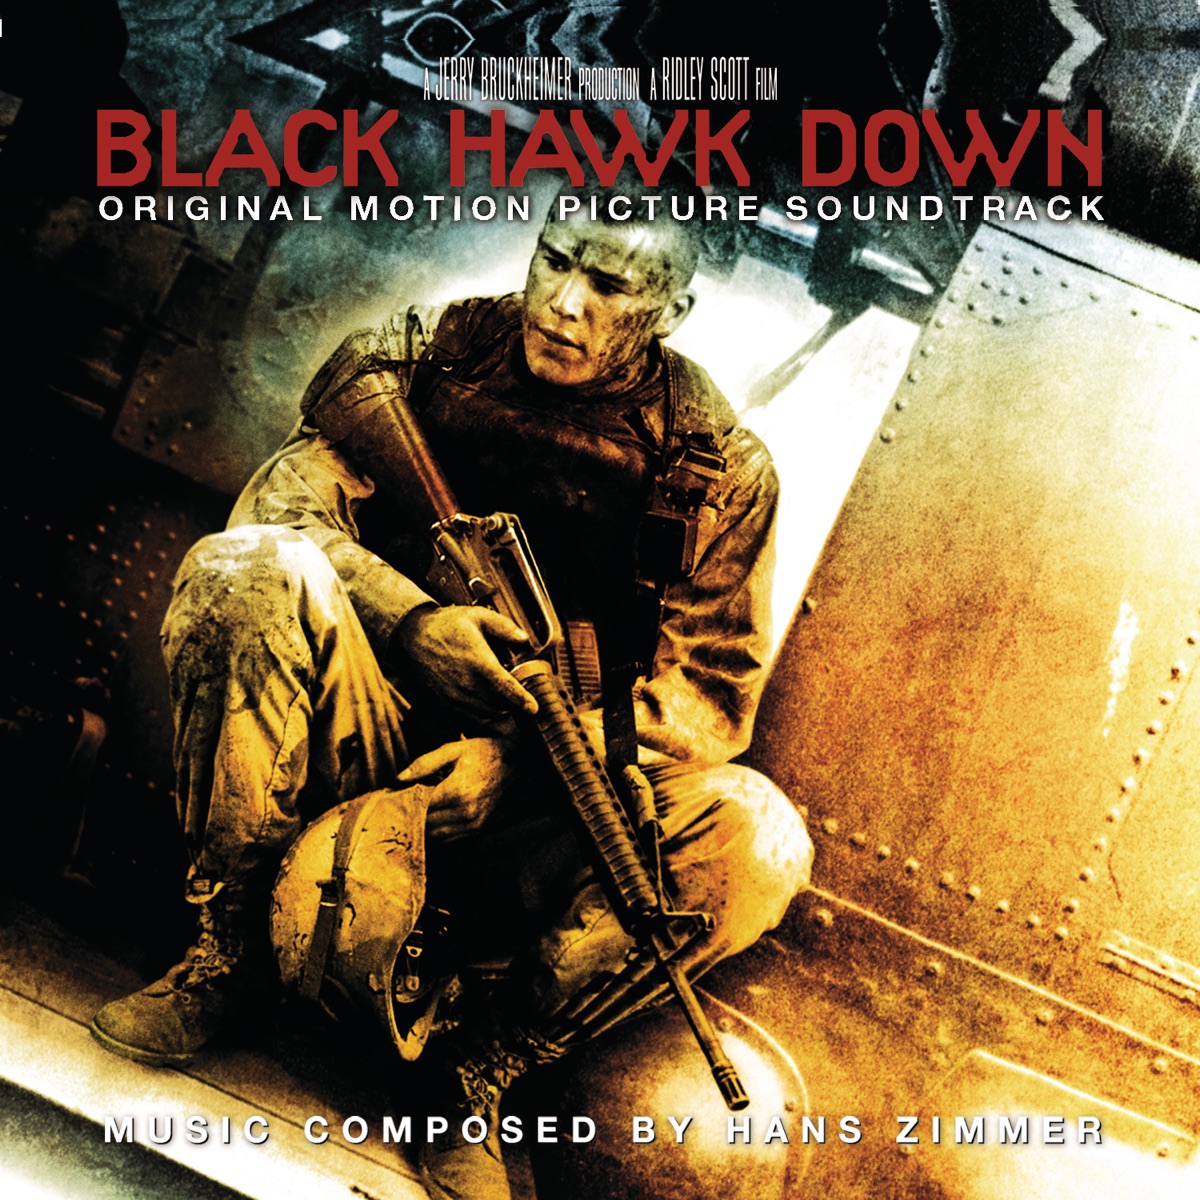 Black Hawk Down (Original Motion Picture Soundtrack) - Album by Hans Zimmer  - Apple Music